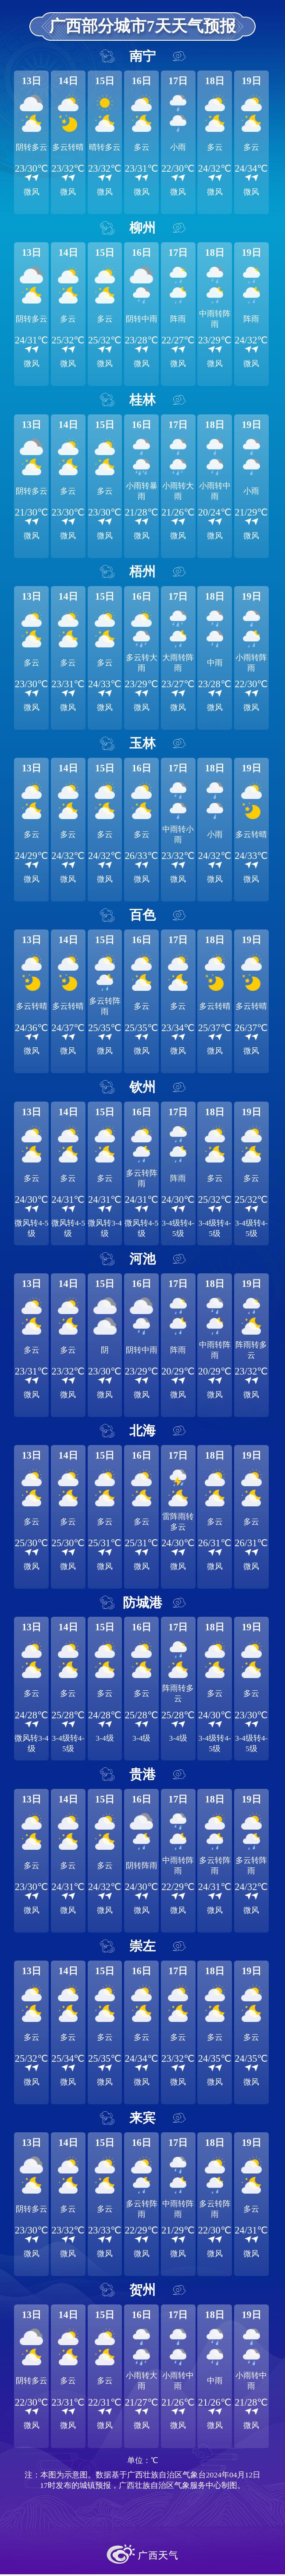 广西部分城市7天天气预报19日,桂东有中到大雨,局地暴雨并伴有短时